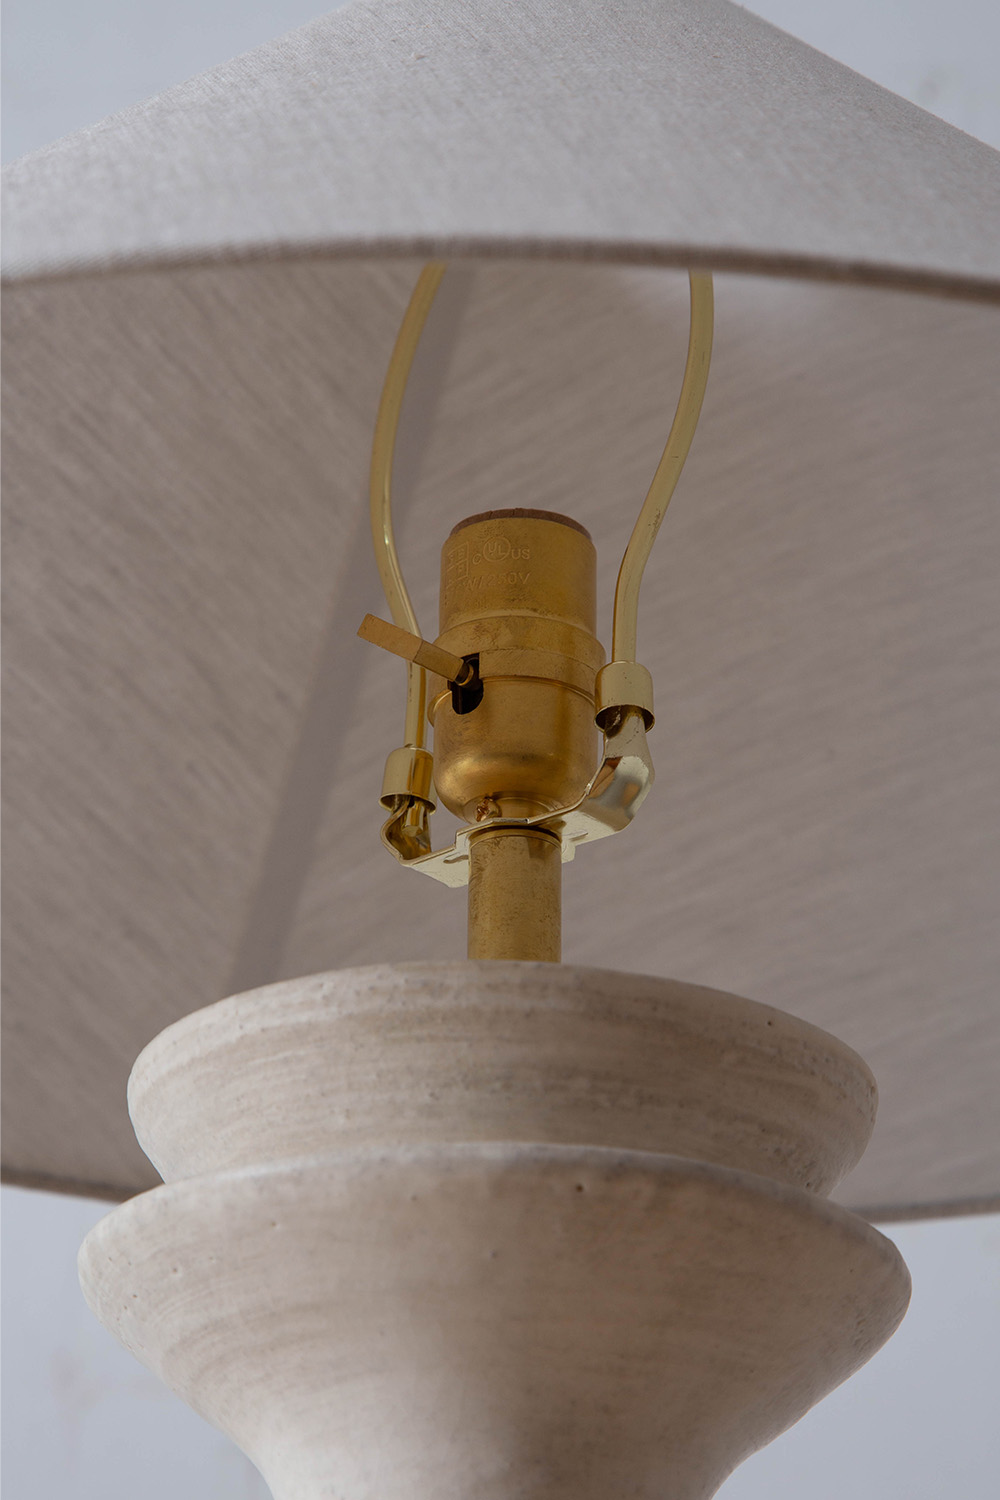 SOPHIA LAMP in White by Danny Kaplan